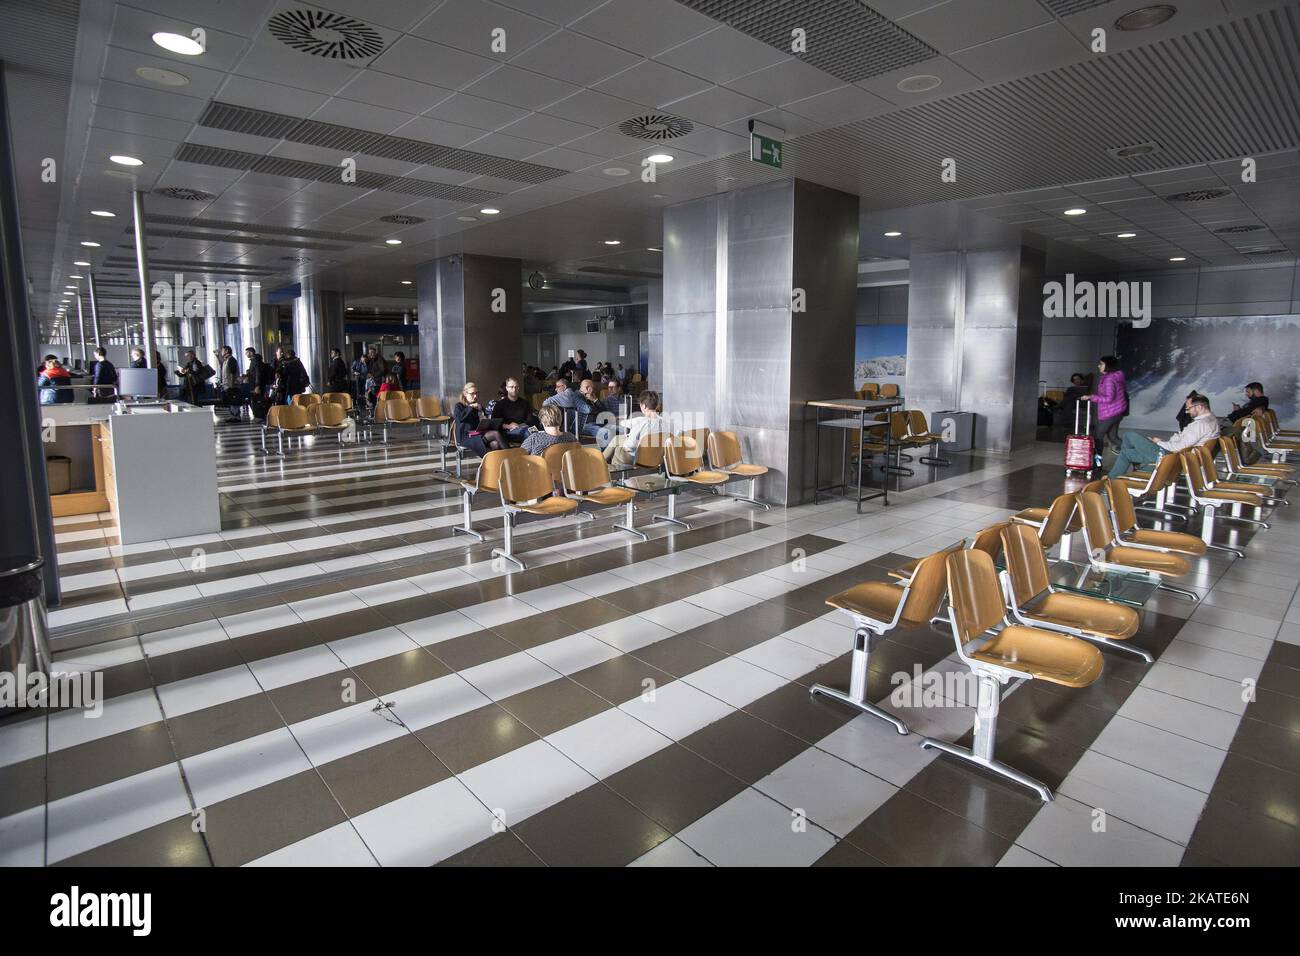 L'aeroporto internazionale di Salonicco si chiama Macedonia. Un aeroporto statale di proprietà dello stato di fromer che ora appartiene alla joint venture Fraport AG/Copelouzos Group. Si tratta del secondo aeroporto più trafficato della Grecia in termini di voli serviti e del terzo aeroporto più trafficato in termini di passeggeri serviti nel 2016, con oltre 6 milioni di passeggeri. Quest'anno il traffico e i passeggeri sono in forte crescita, toccando anche il 10 per cento. LGTS/SKG è il principale aeroporto della Grecia settentrionale e serve la città di Salonicco (la seconda città più grande della Grecia), la popolare destinazione turistica della Calcidica e le città circostanti della regione. Foto Stock